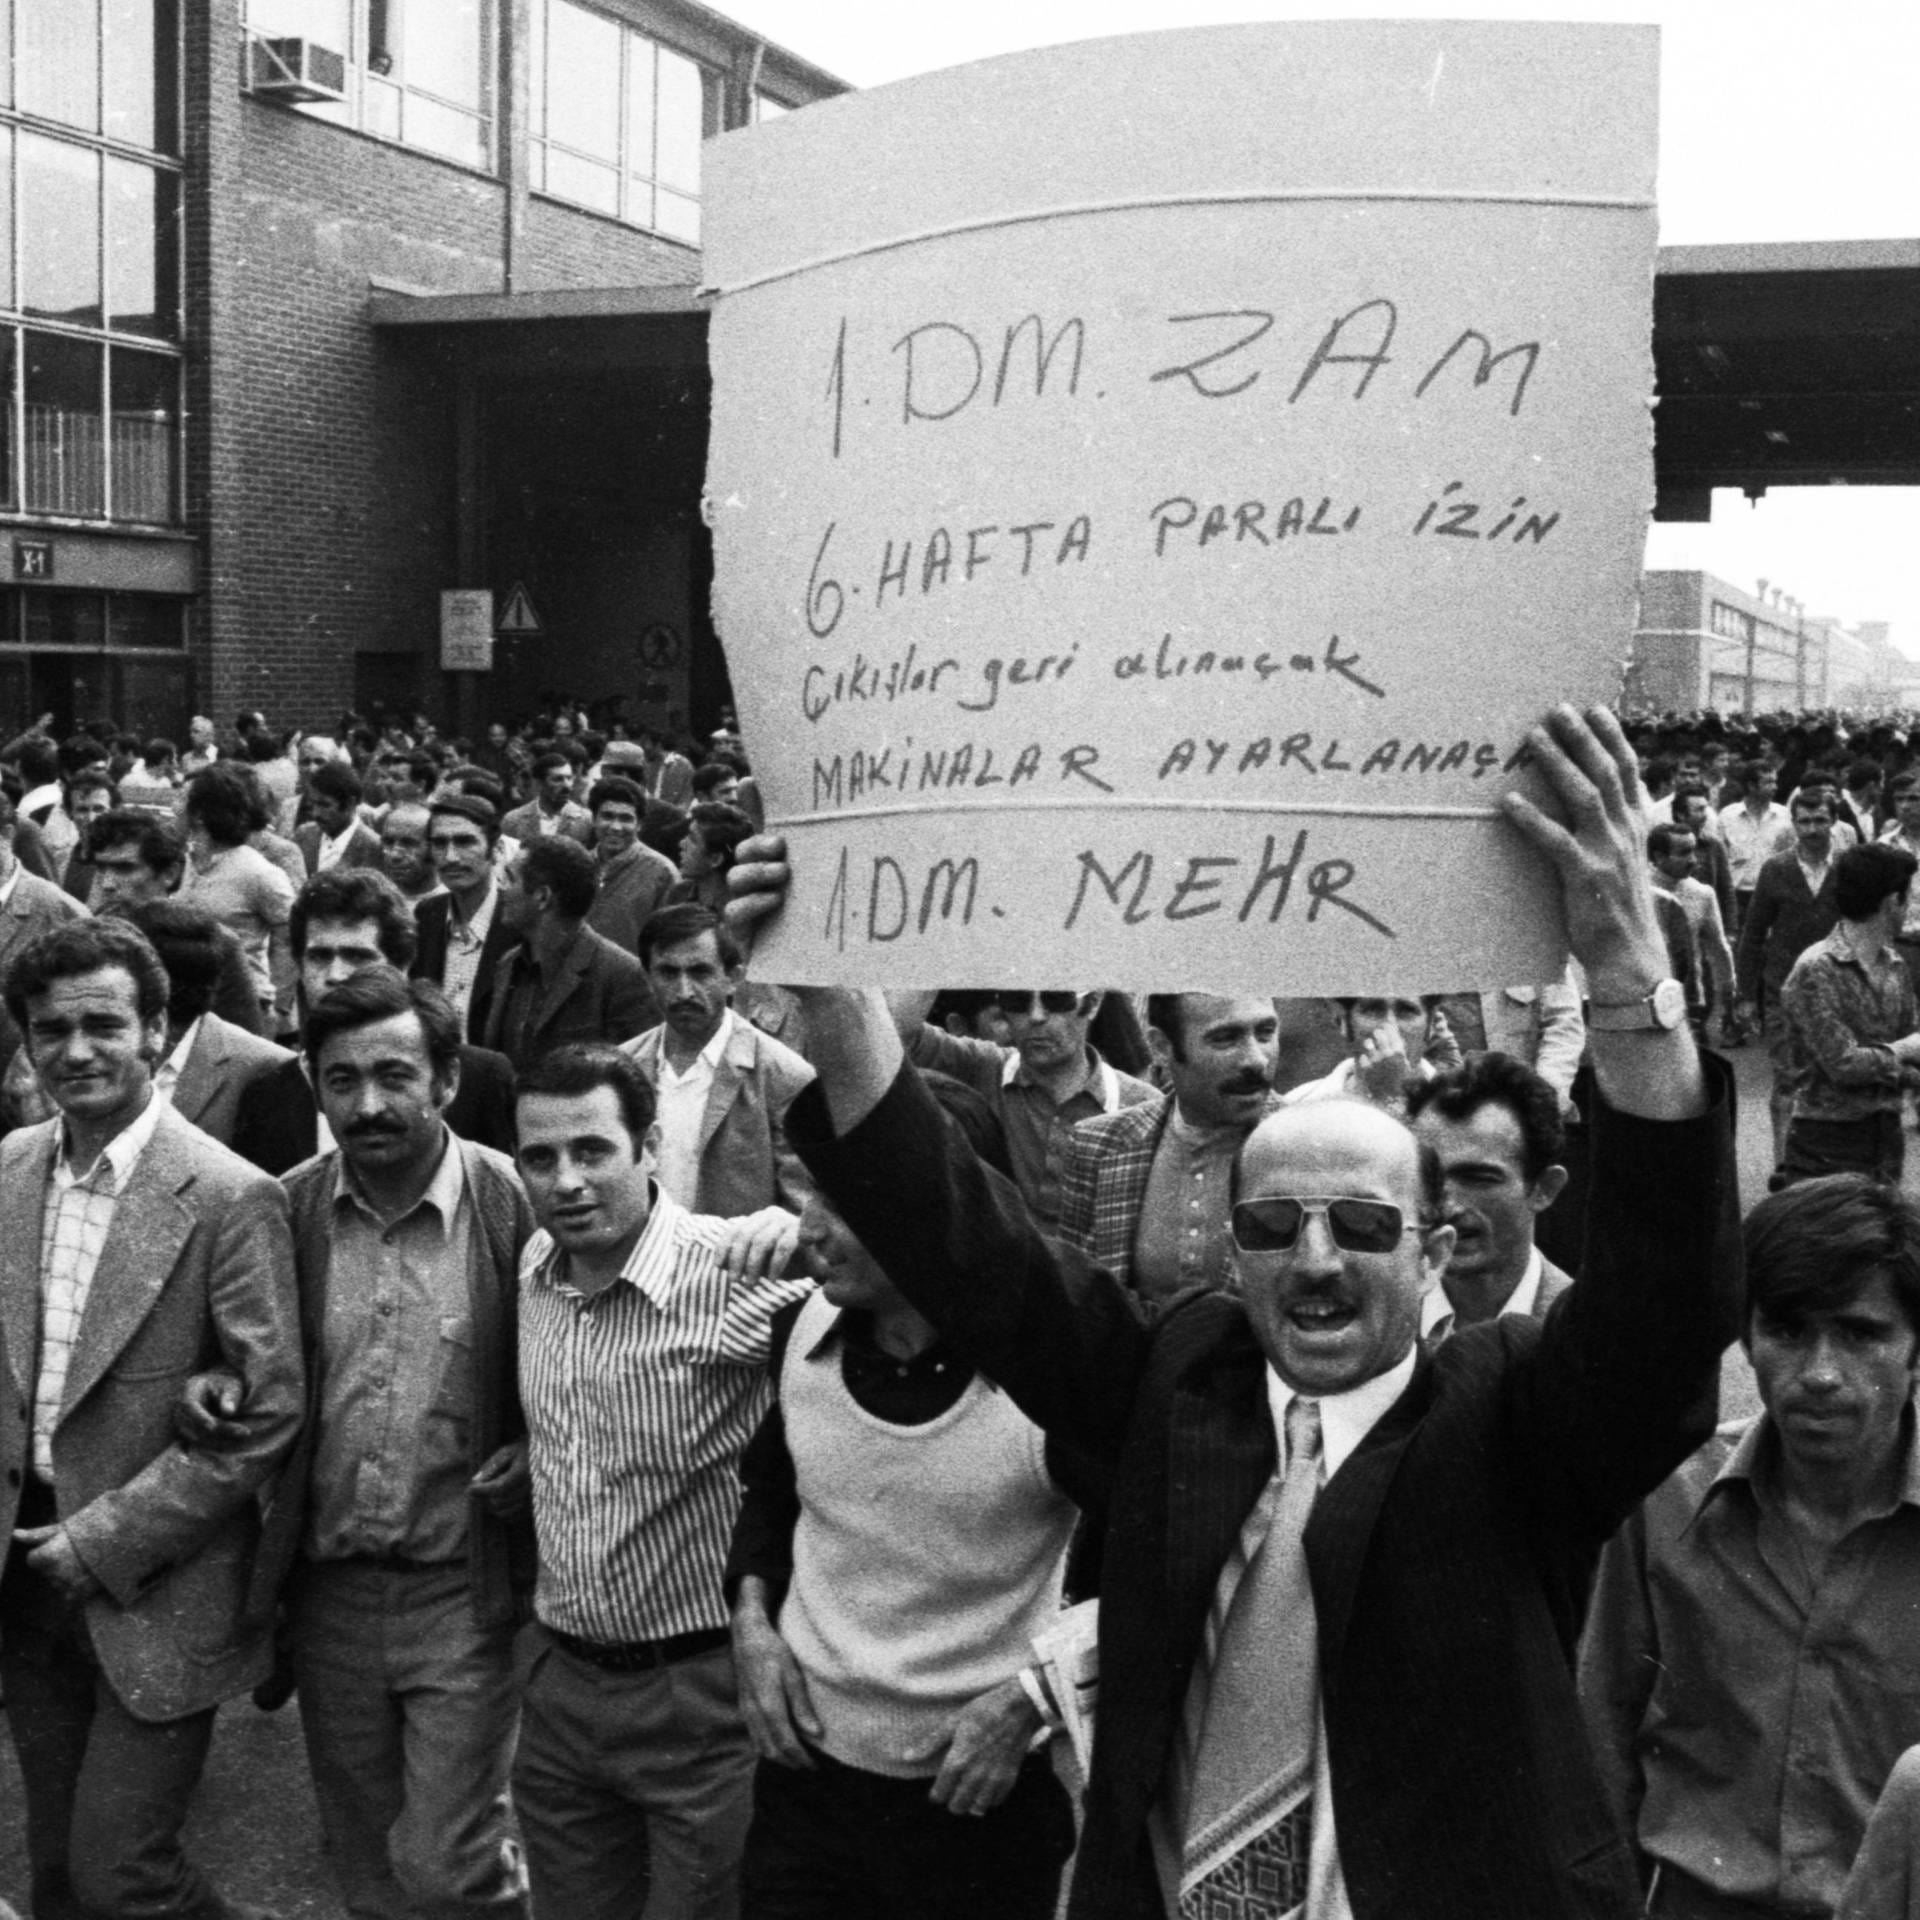 Die wilden Streiks von 1973 – Wie “Gastarbeiter” für faire Behandlung kämpften